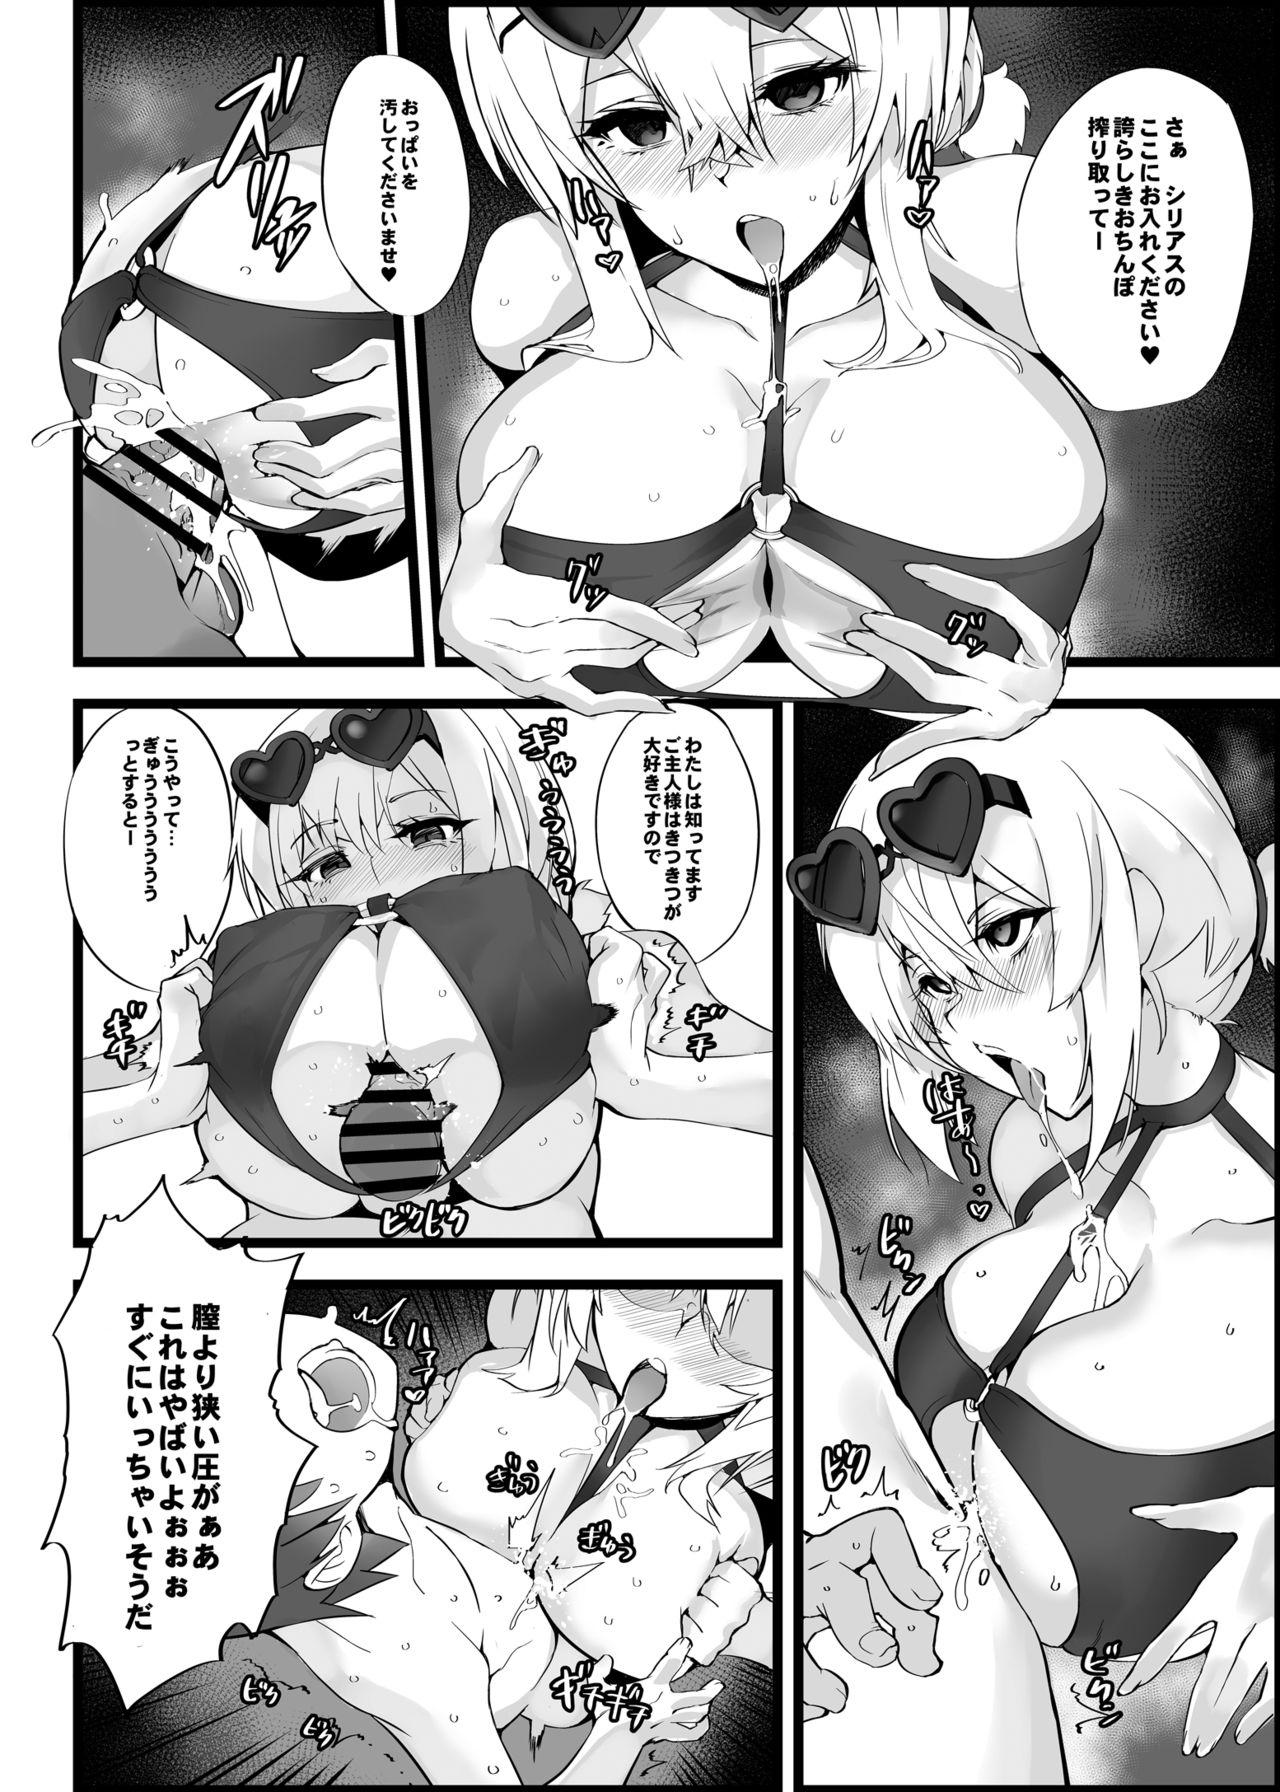 Plump Mukakin Shirei ni Yubiwa o Kawaseru Saigo no Houhou 5 - Azur lane Sapphicerotica - Page 11